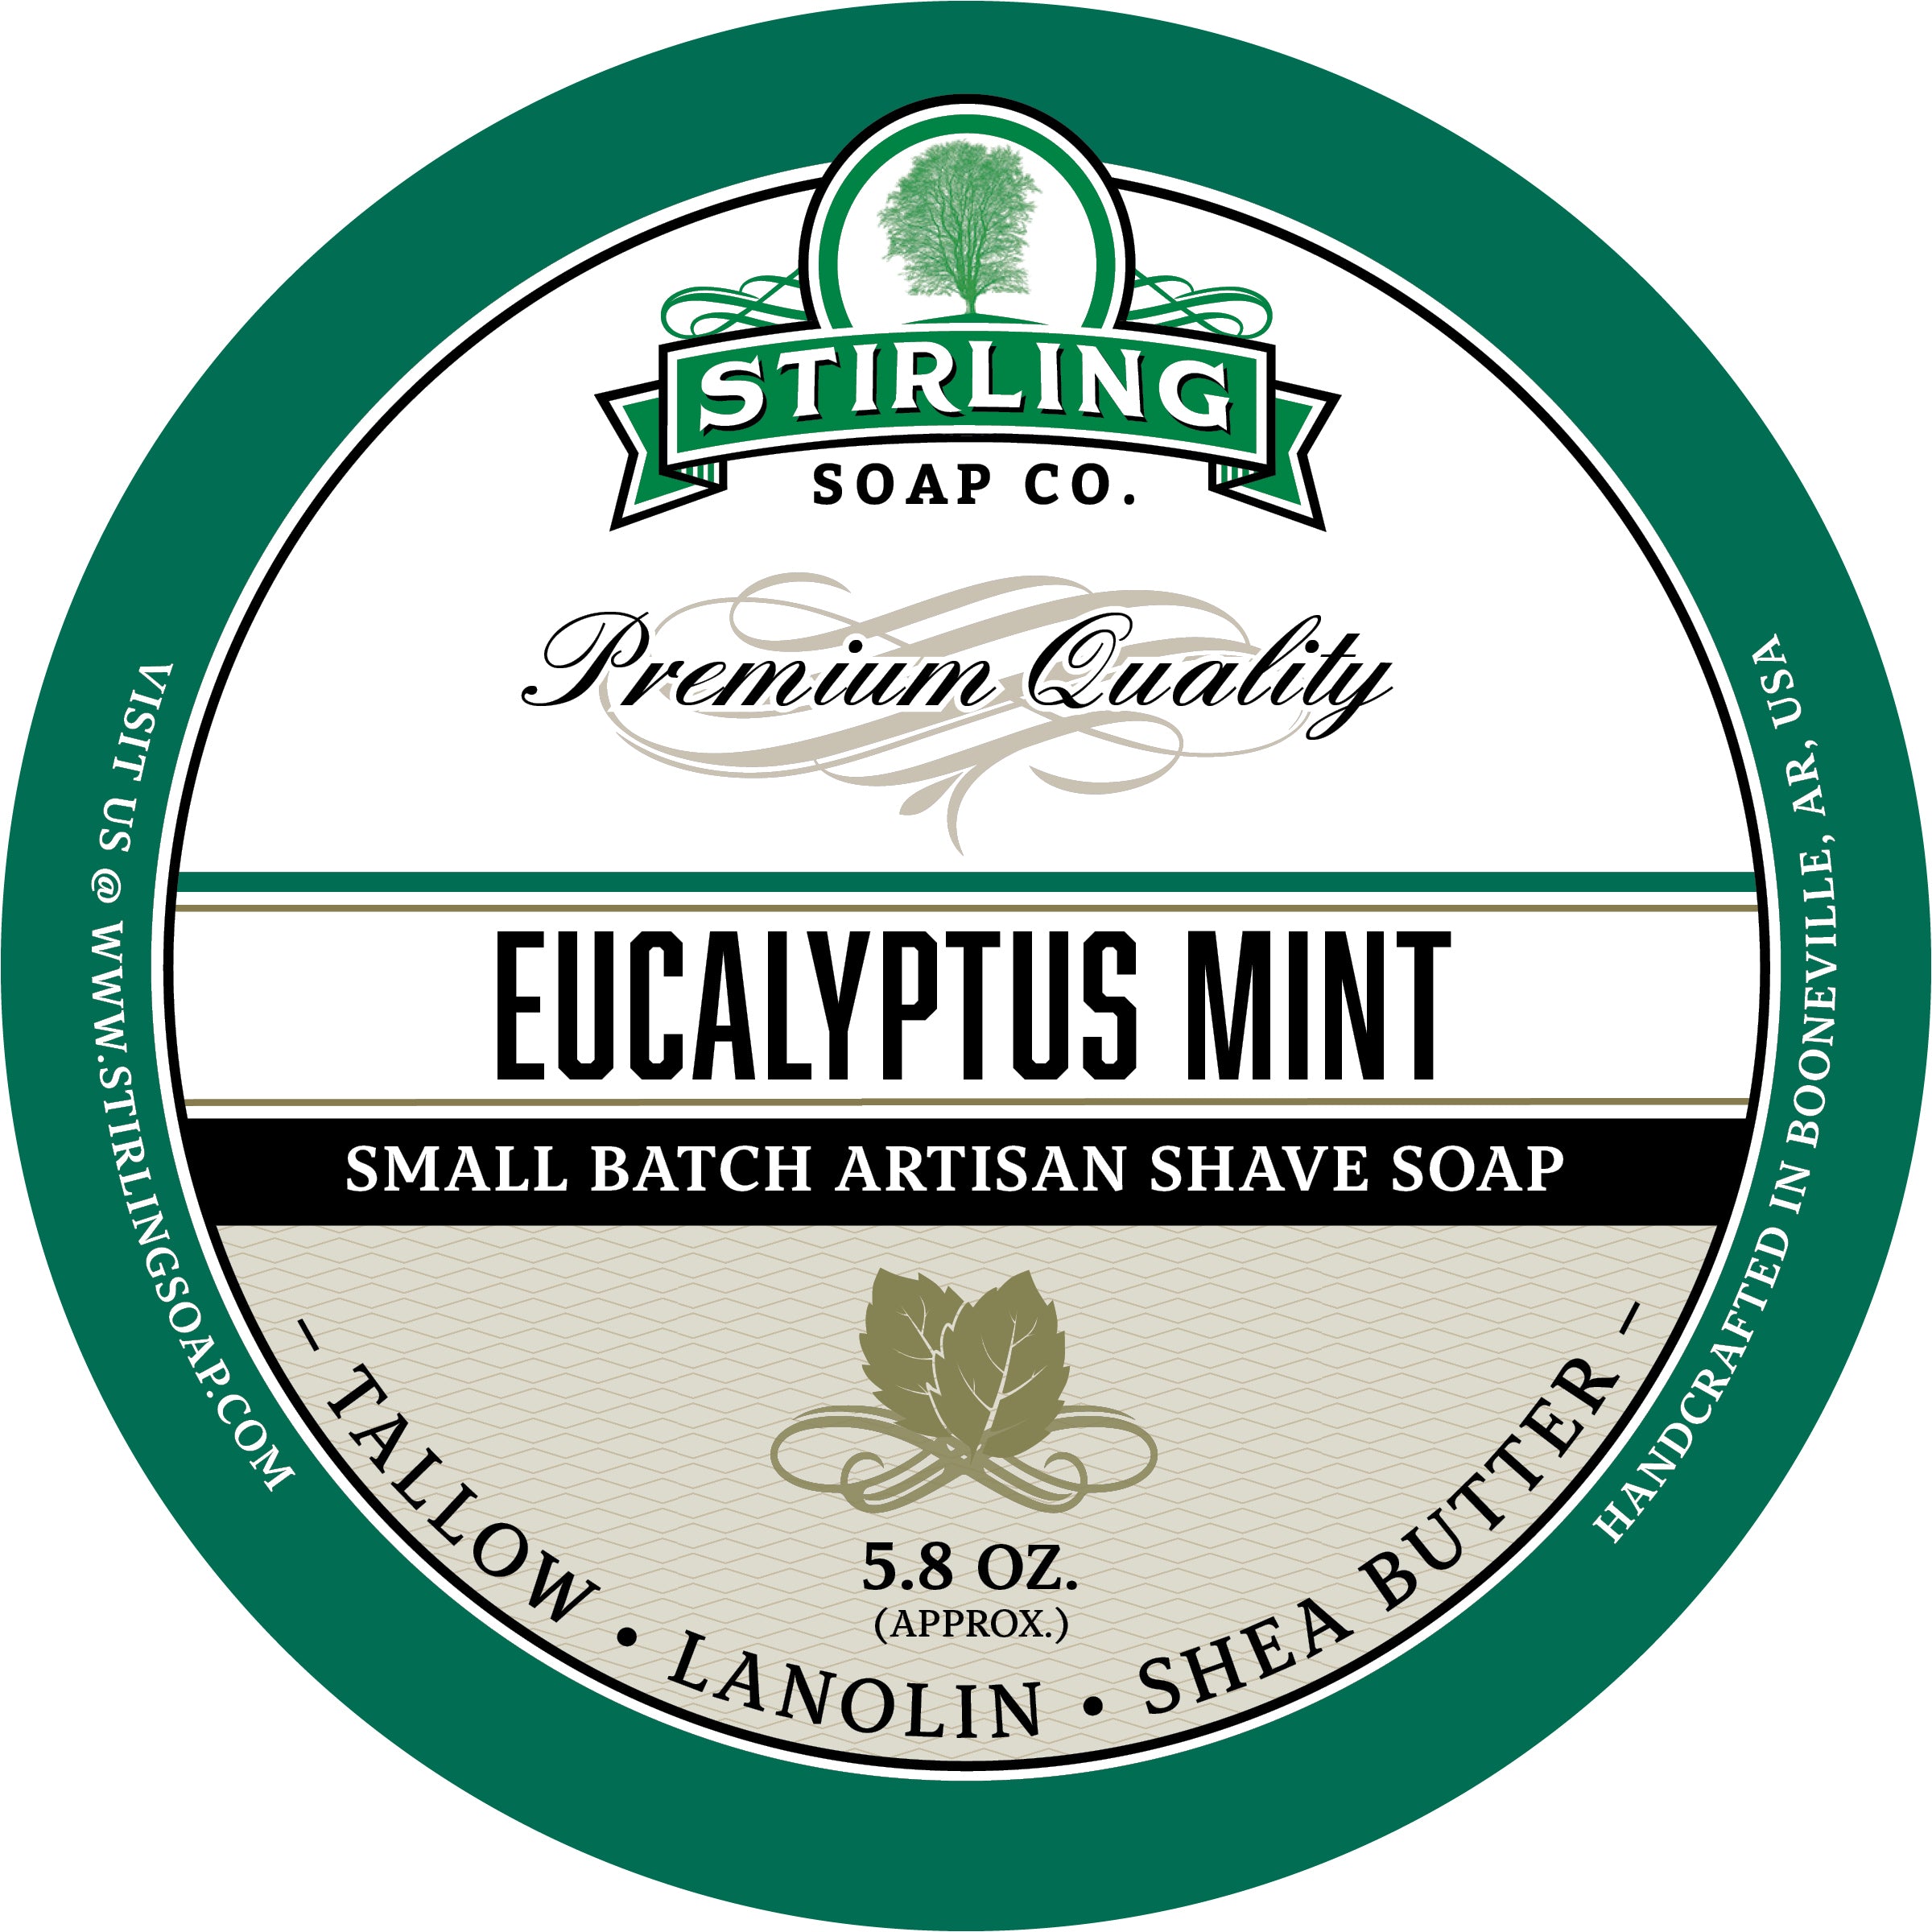 Rosemary Mint - Shampoo Bar – Stirling Soap Company